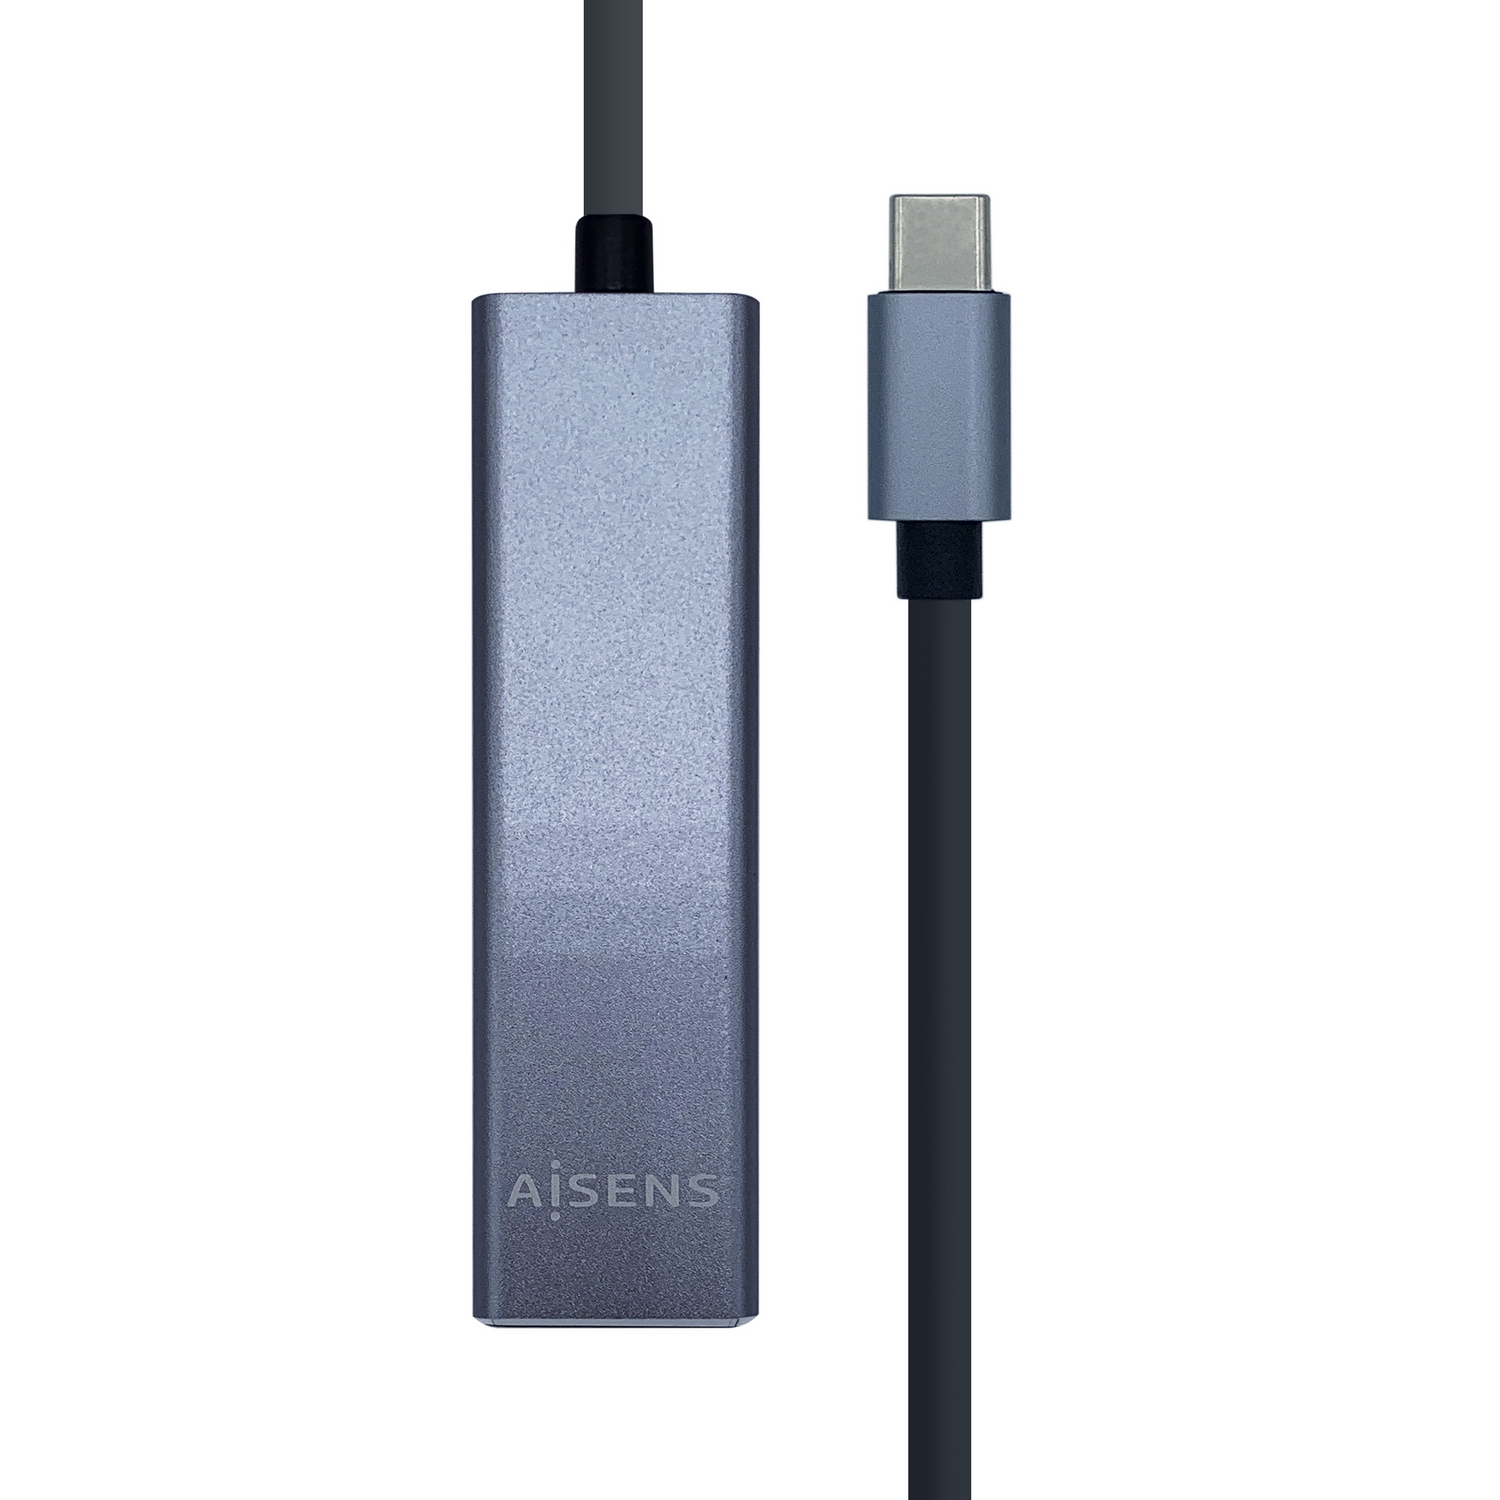 Aisens Convertisseur USB3.1 GEN1 USB-C vers Ethernet GIGABIT 10/100/1000 MBPS + HUB 3xUSB3.0 - 15cm - Couleur Gris